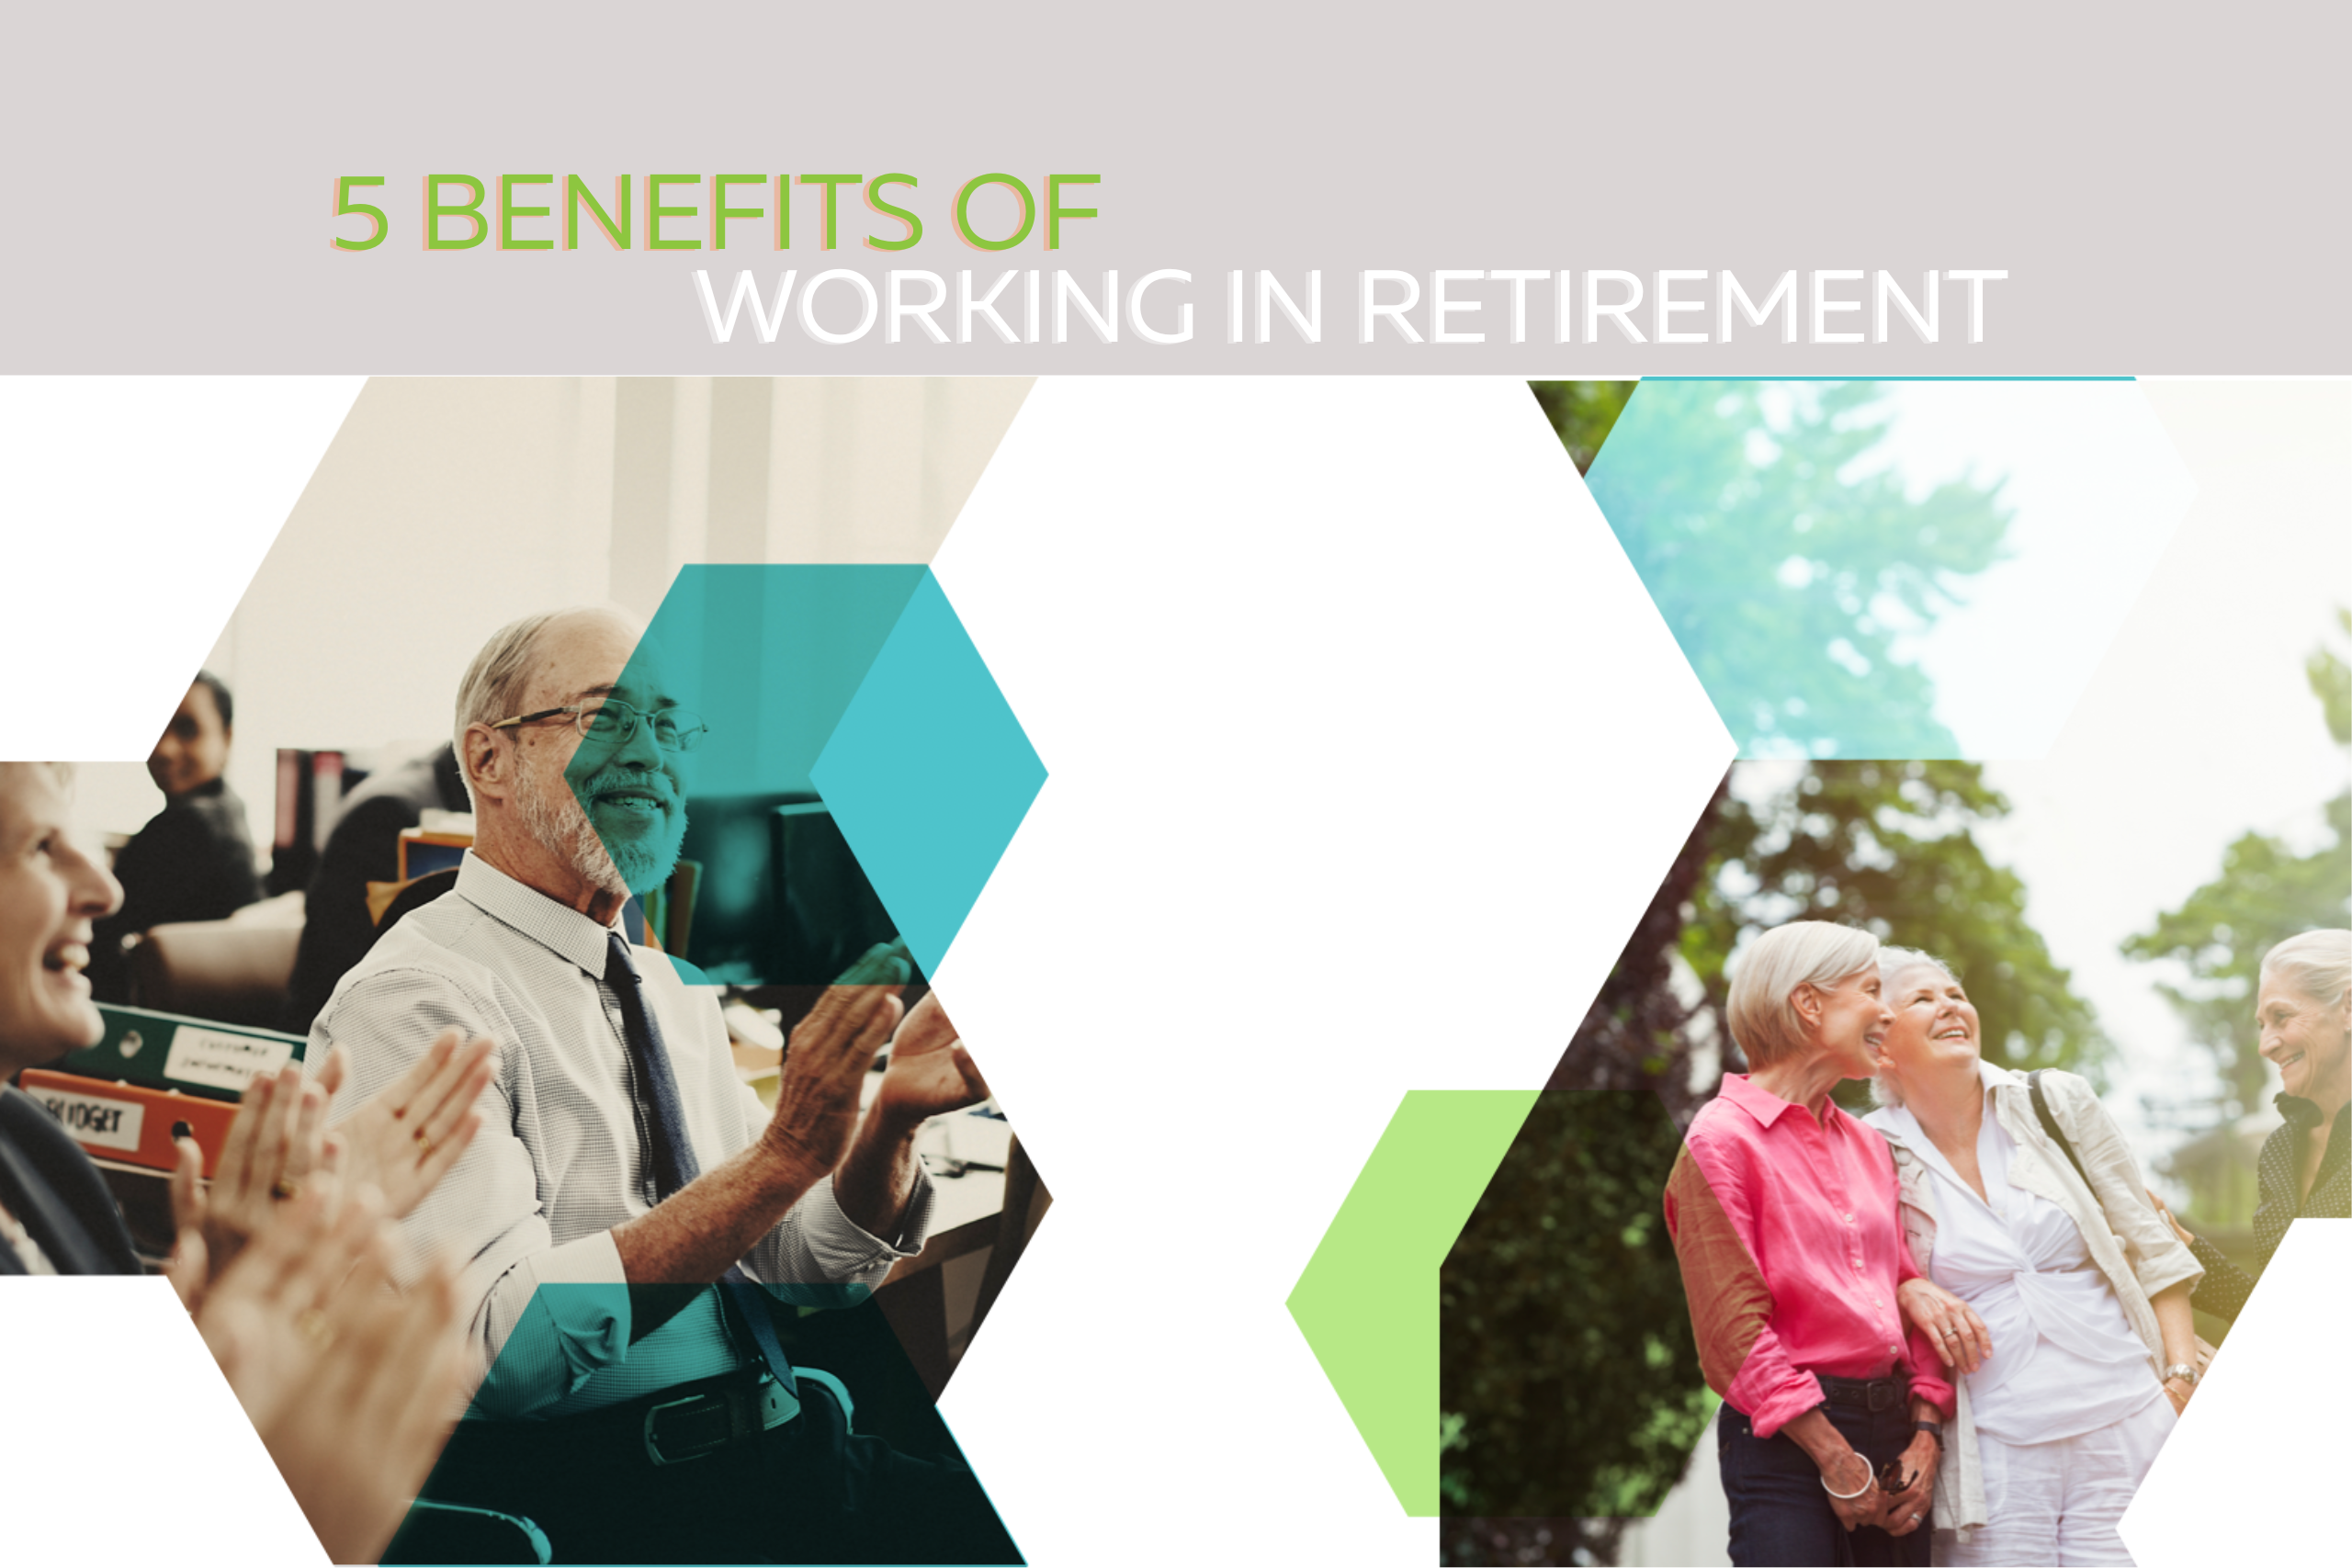 Active men and women in retirement